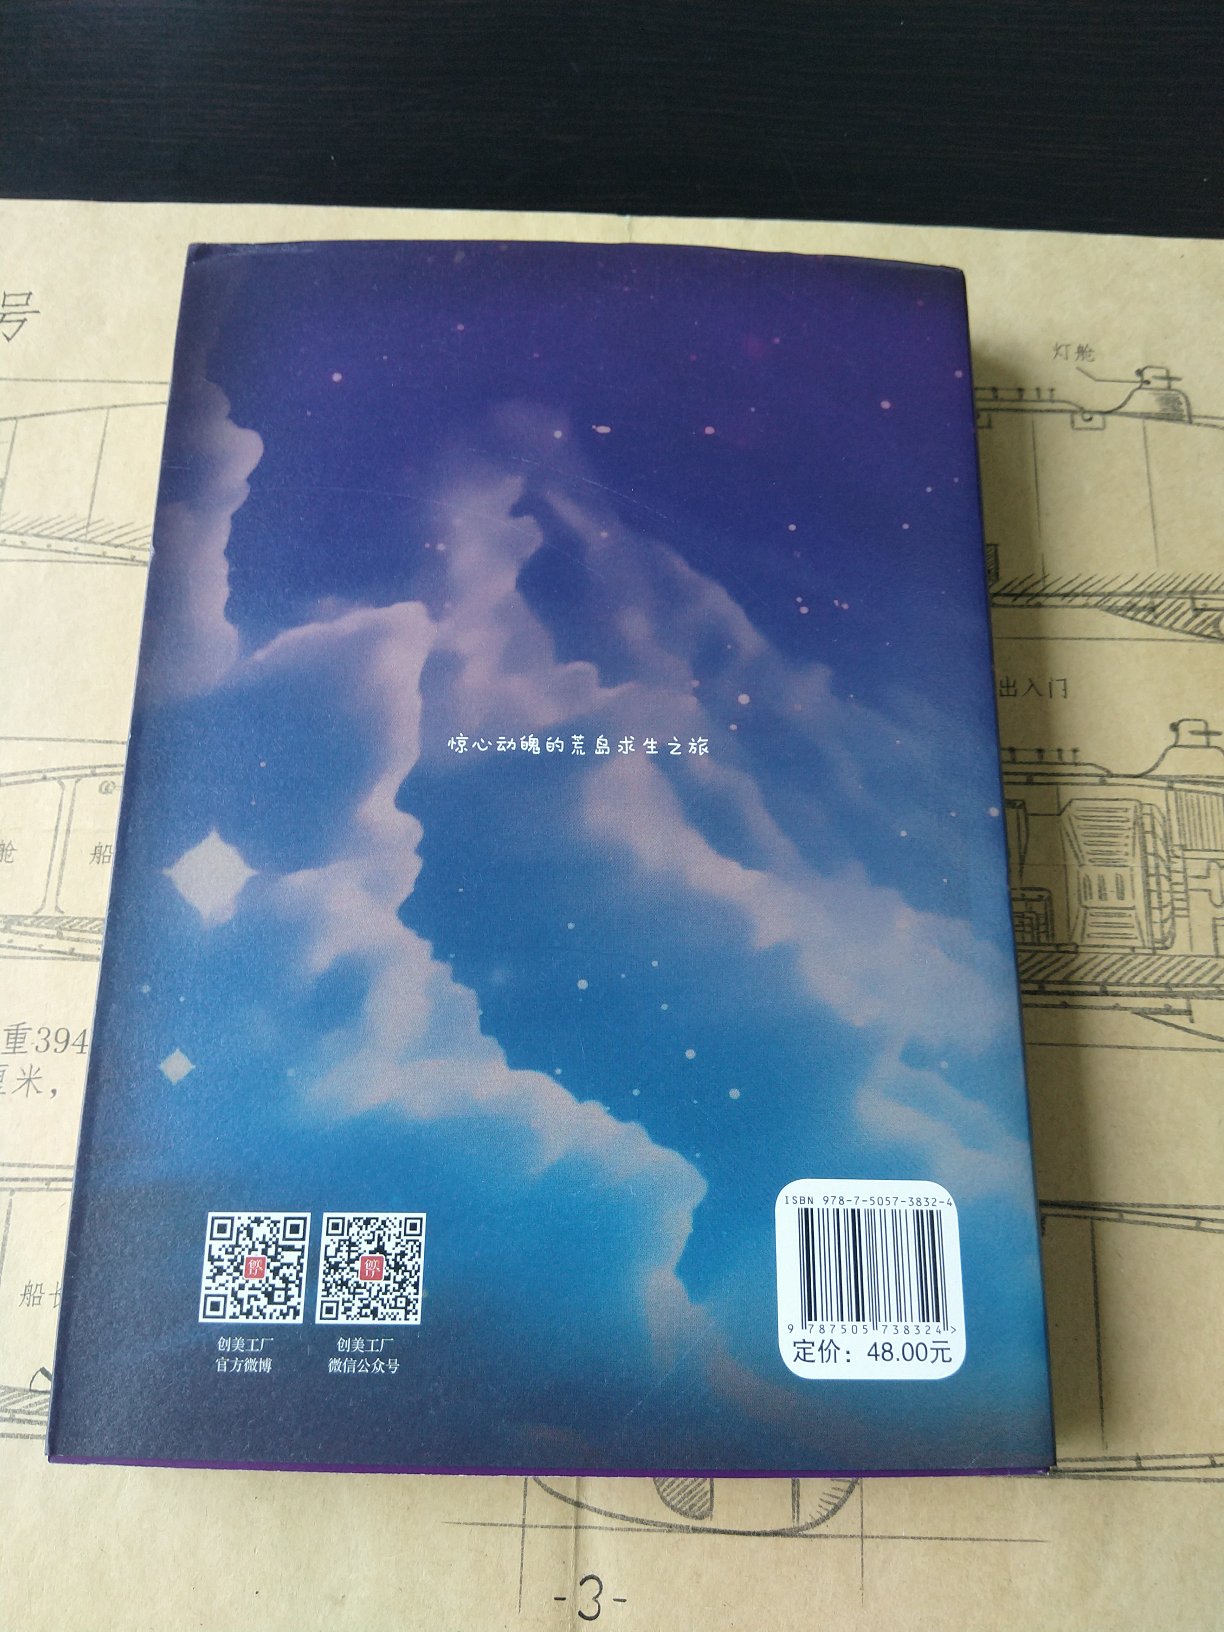 好书，趁活动把凡尔纳科幻三部曲收藏了，这个版本封面真心不错，品质很好，支持。